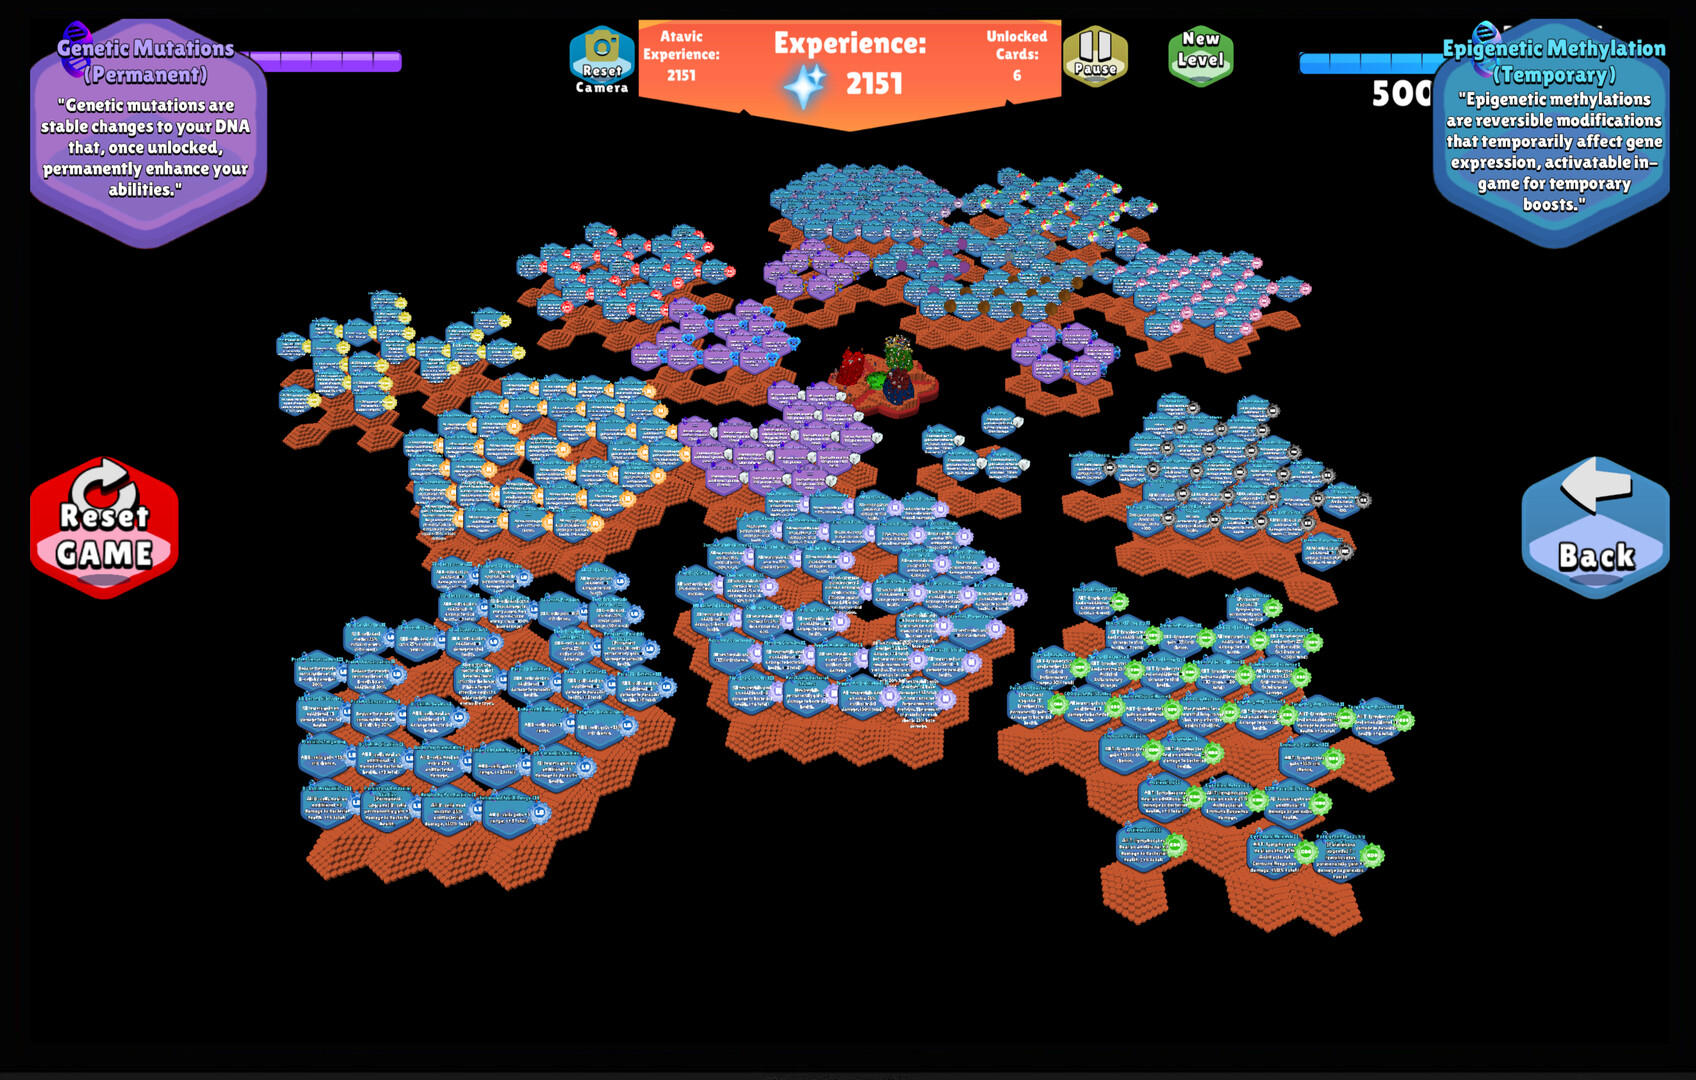 STEM Defense screenshot game